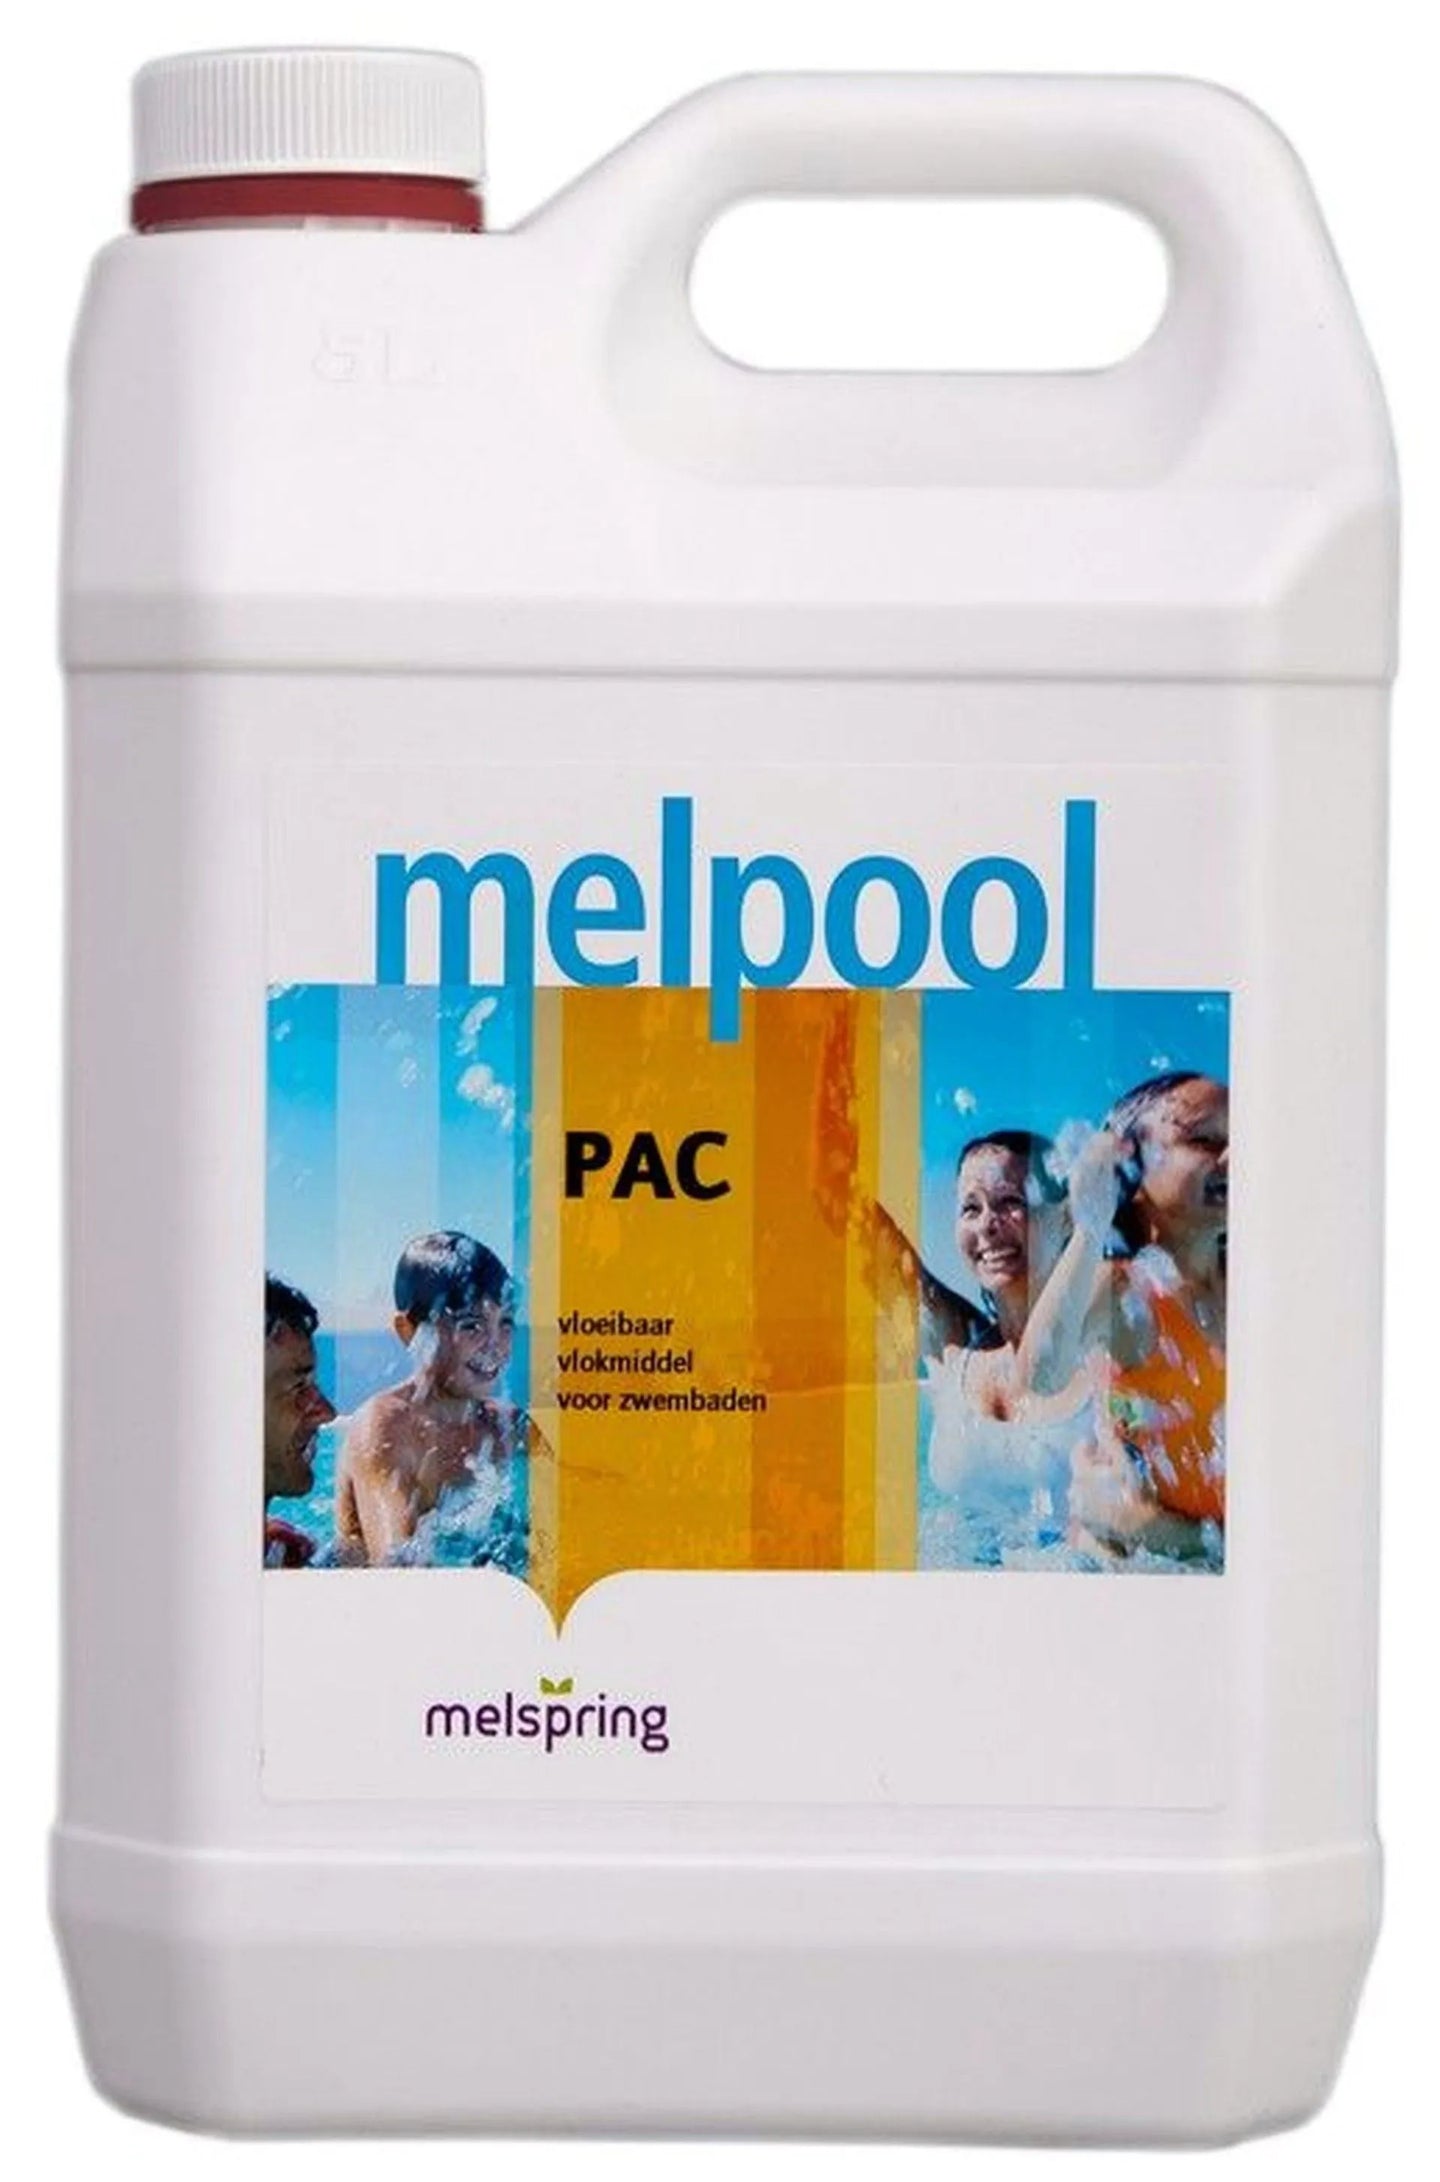 Melpool PAC (vloeibaar vlokmiddel) 5L